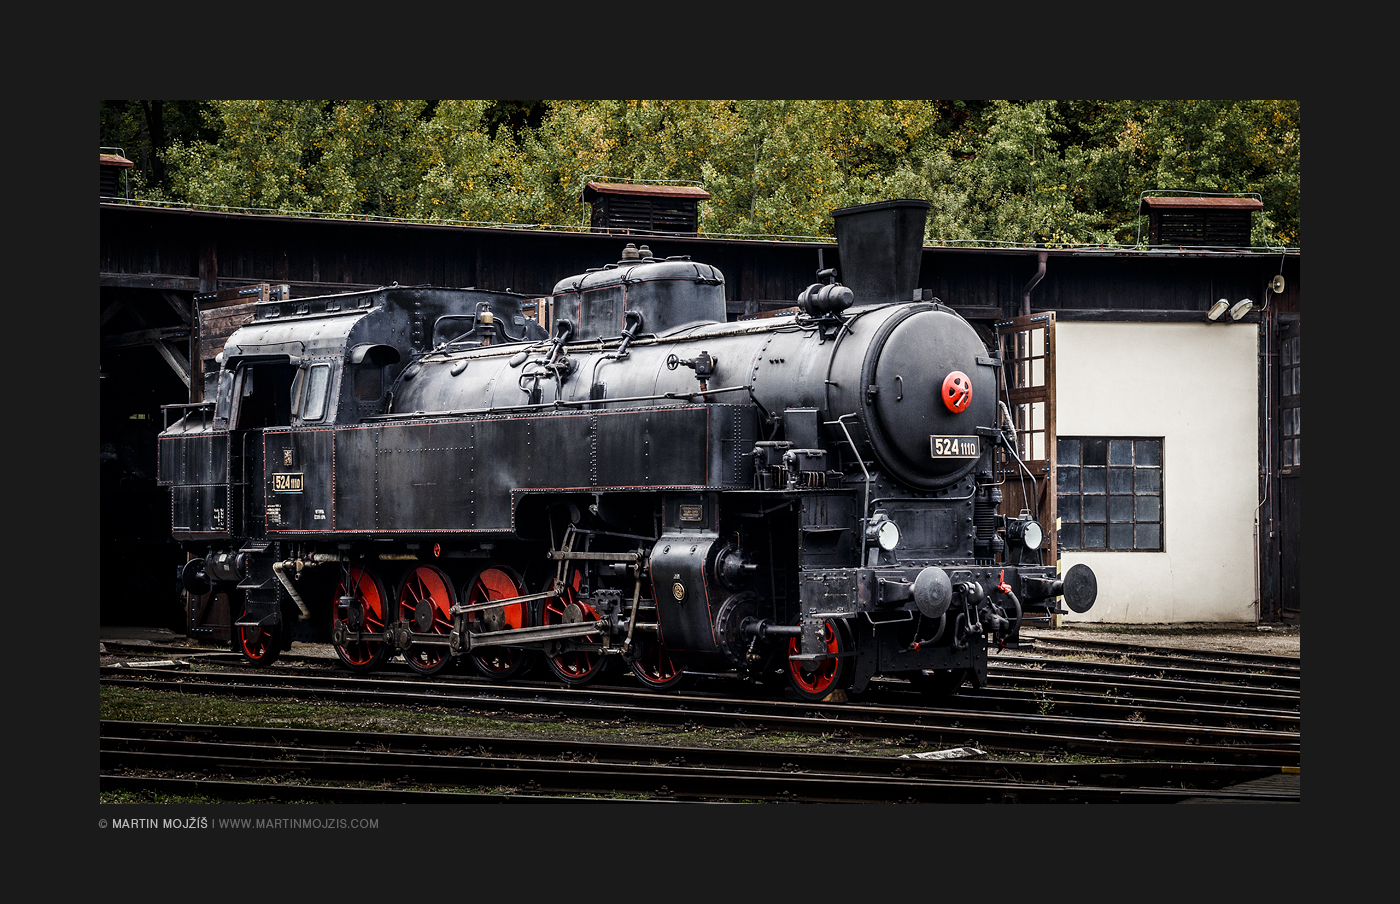 Parní lokomotiva 524 1110. Železniční muzeum v Lužné u Rakovníka.